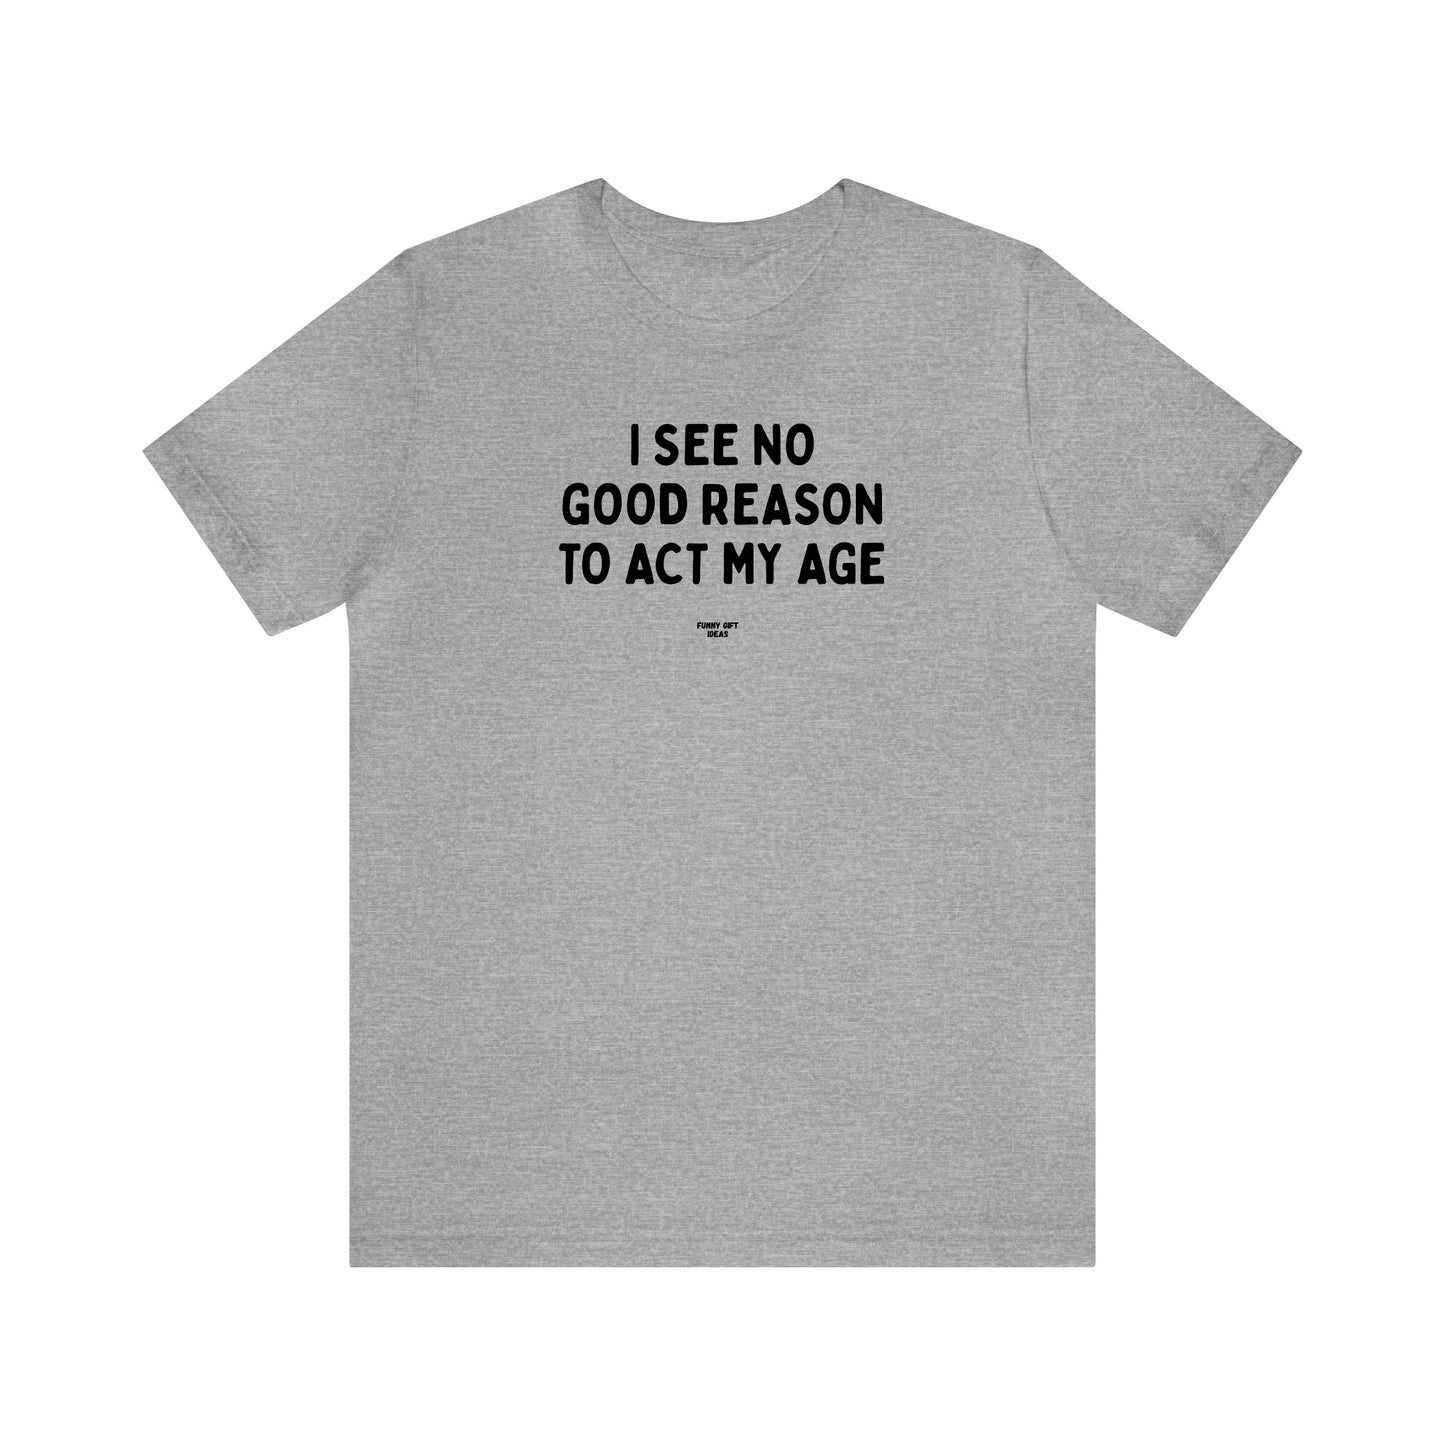 Mens T Shirts - I See No Good Reason to Act My Age - Funny Men T Shirts